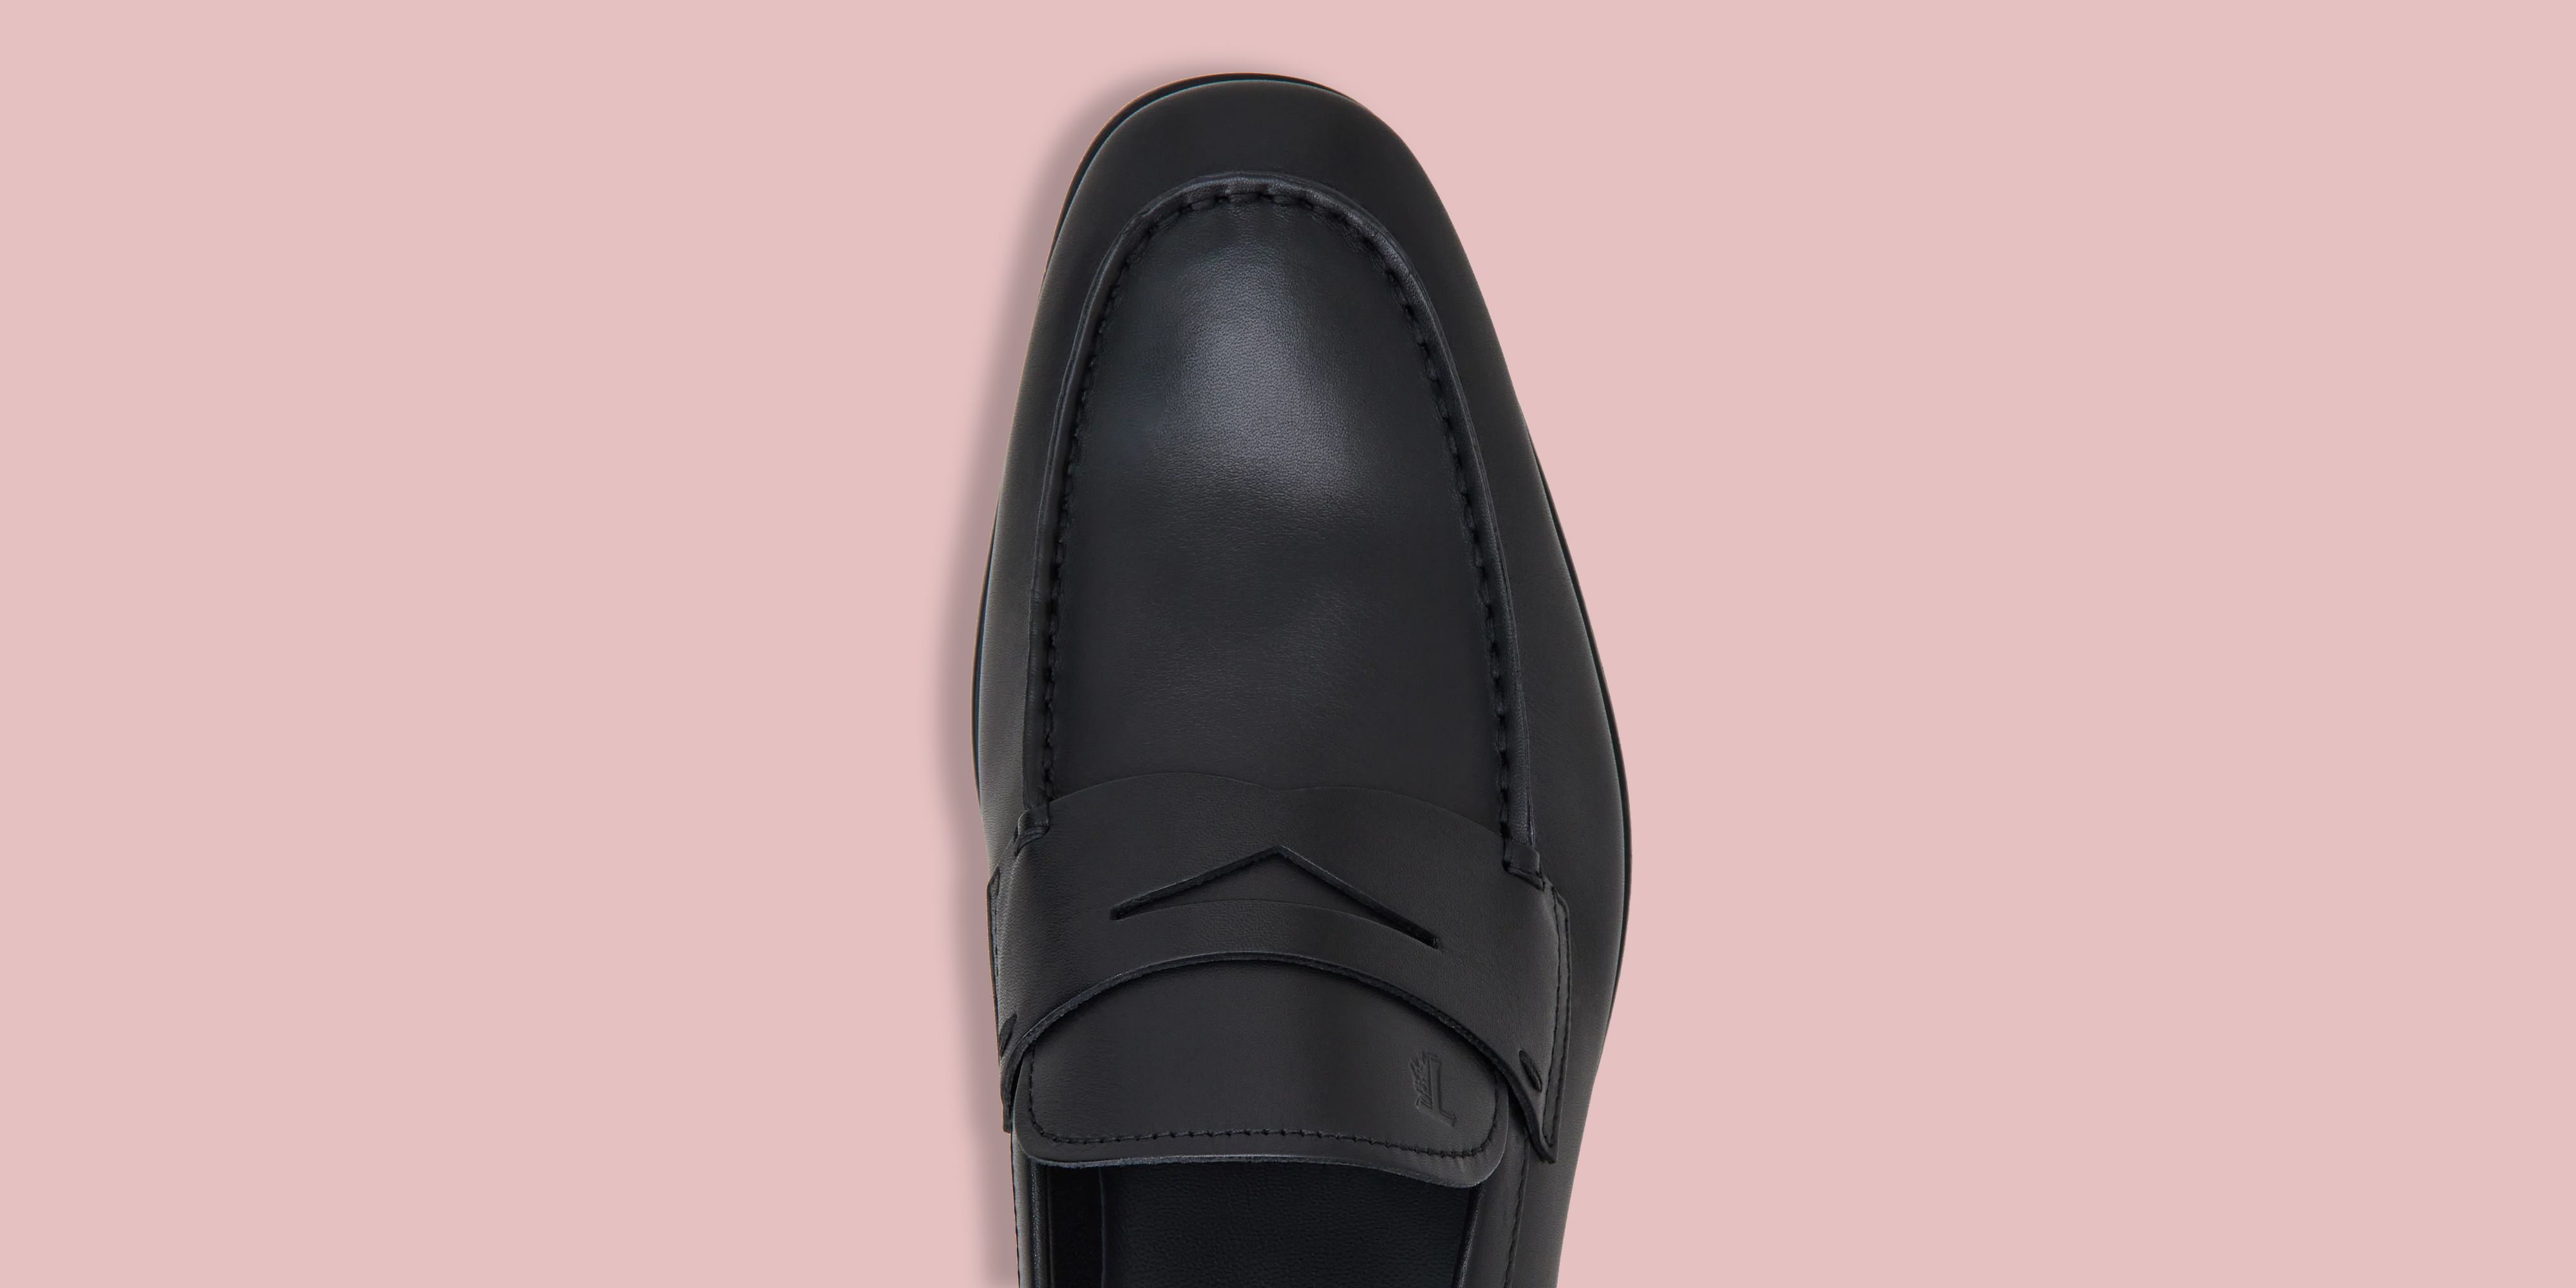 Men Formal Wedding Shoes Luxury Men Business Dress Italian Leather